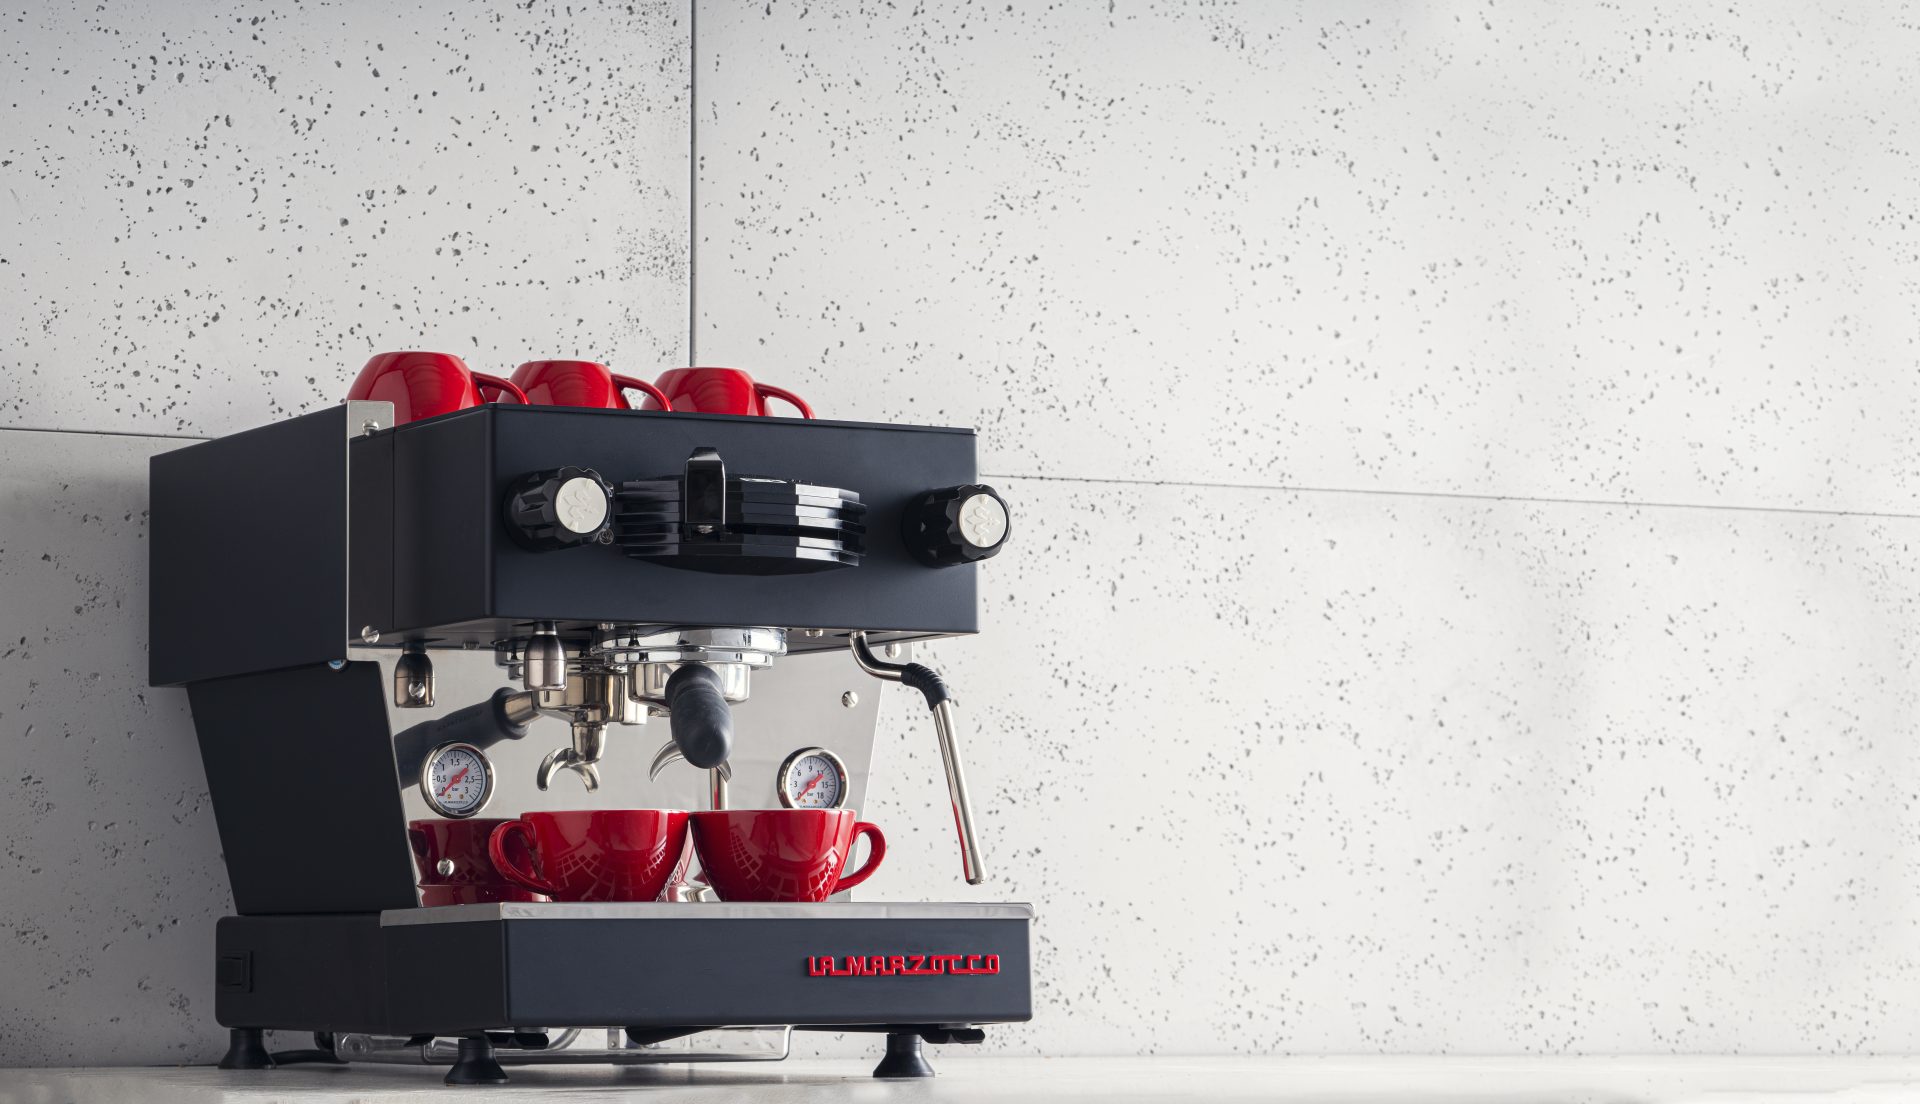 How to choose an espresso machine? - Blog